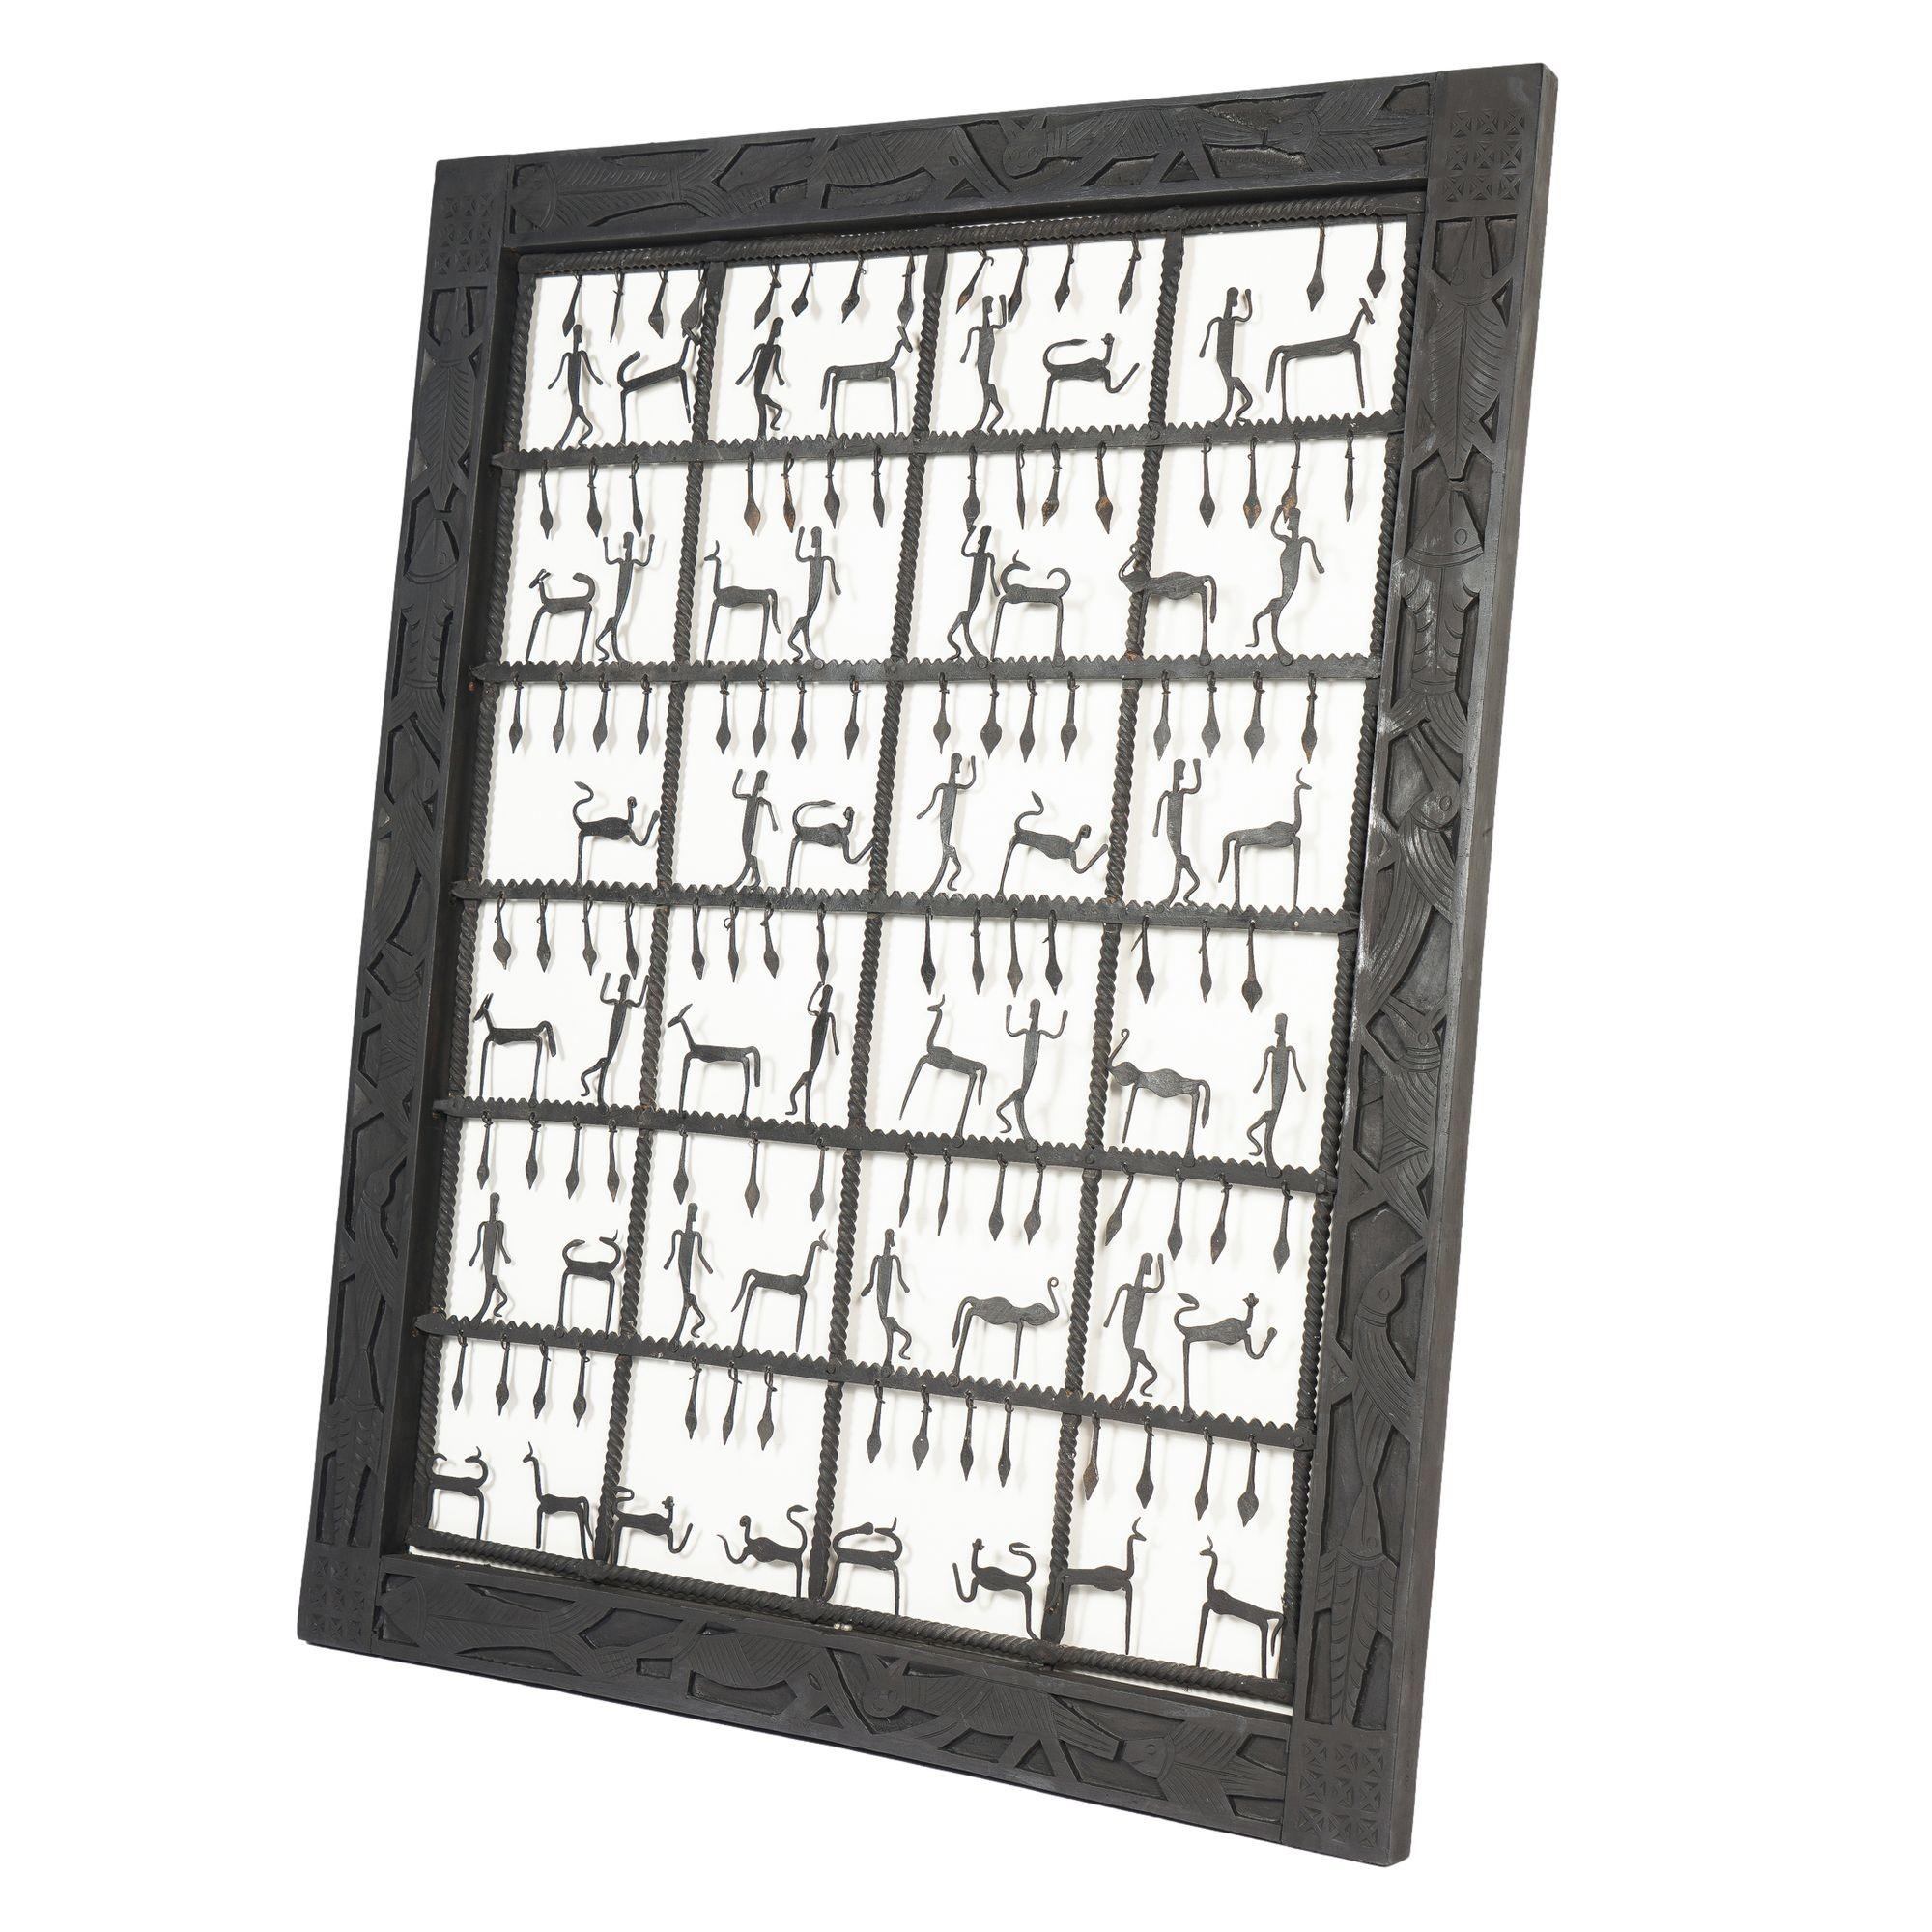 Handgeschmiedetes Dogon-Stammesgitter aus Eisen mit handgeschmiedeten Silhouetten-Figuren in einem Raster aus 24 Quadraten. Das Werk ist in seinem originalen flachen geschnitzten und bemalten Hartholzrahmen gerahmt. Der Rahmen ist mit Fischen,